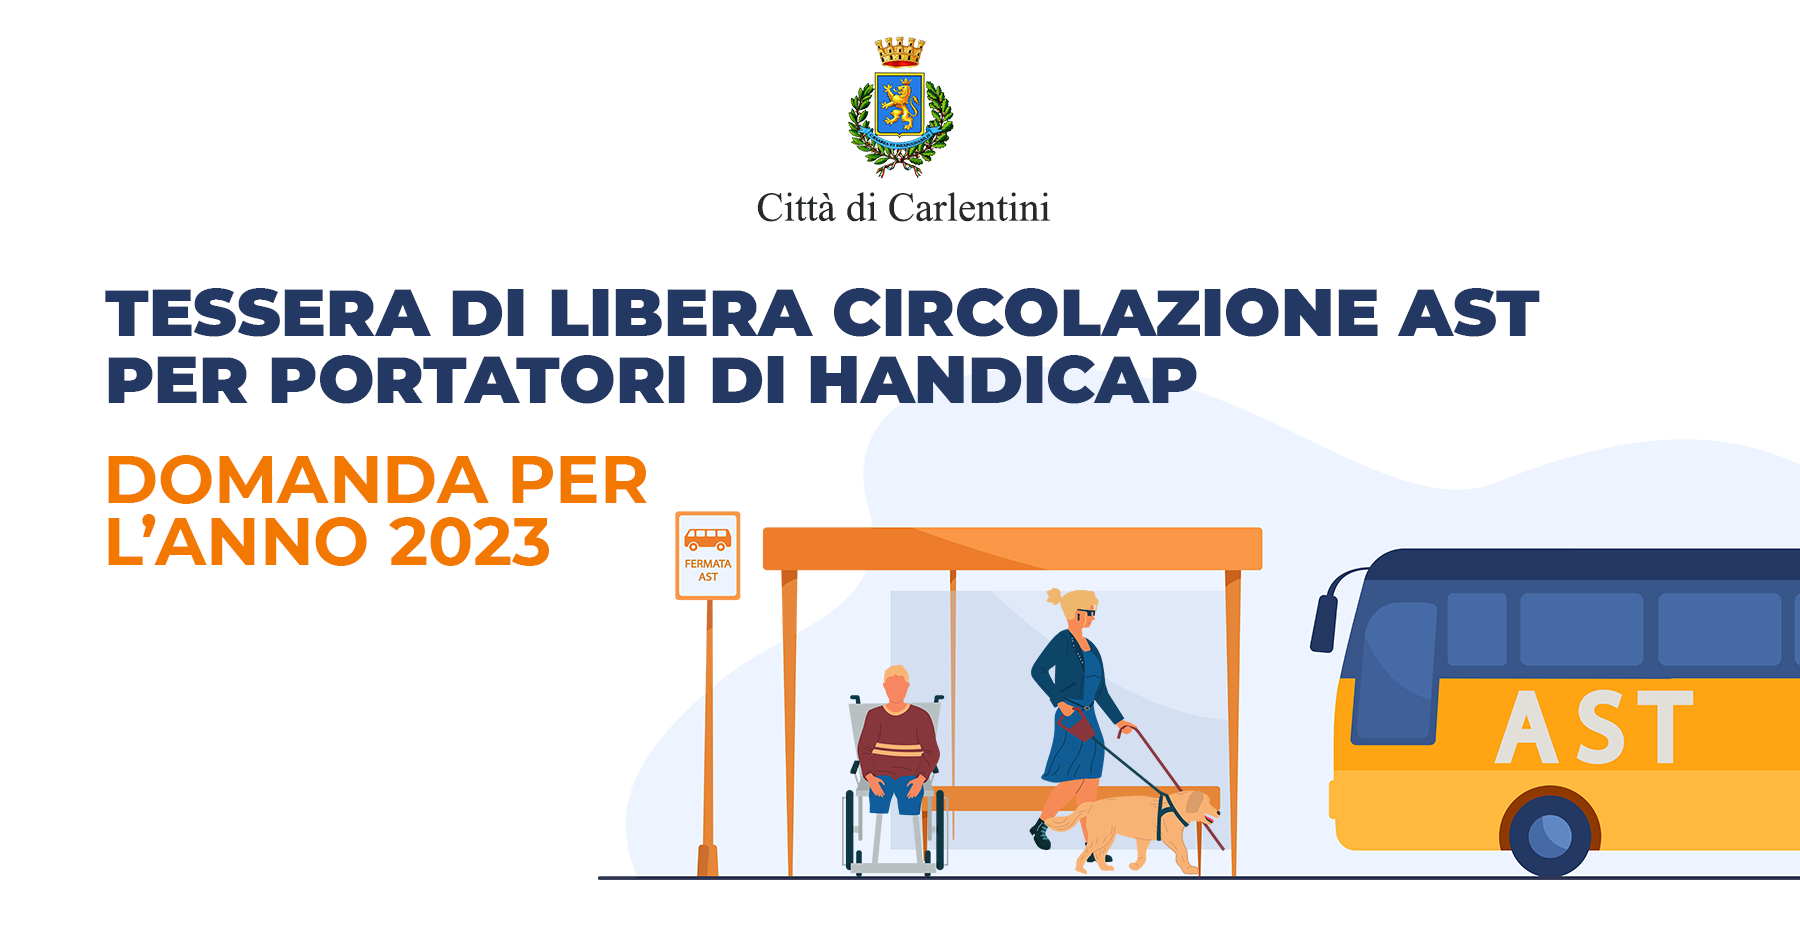 Tessera di libera circolazione A.S.T. per portatori di handicap: domanda entro il 12 novembre 2022.